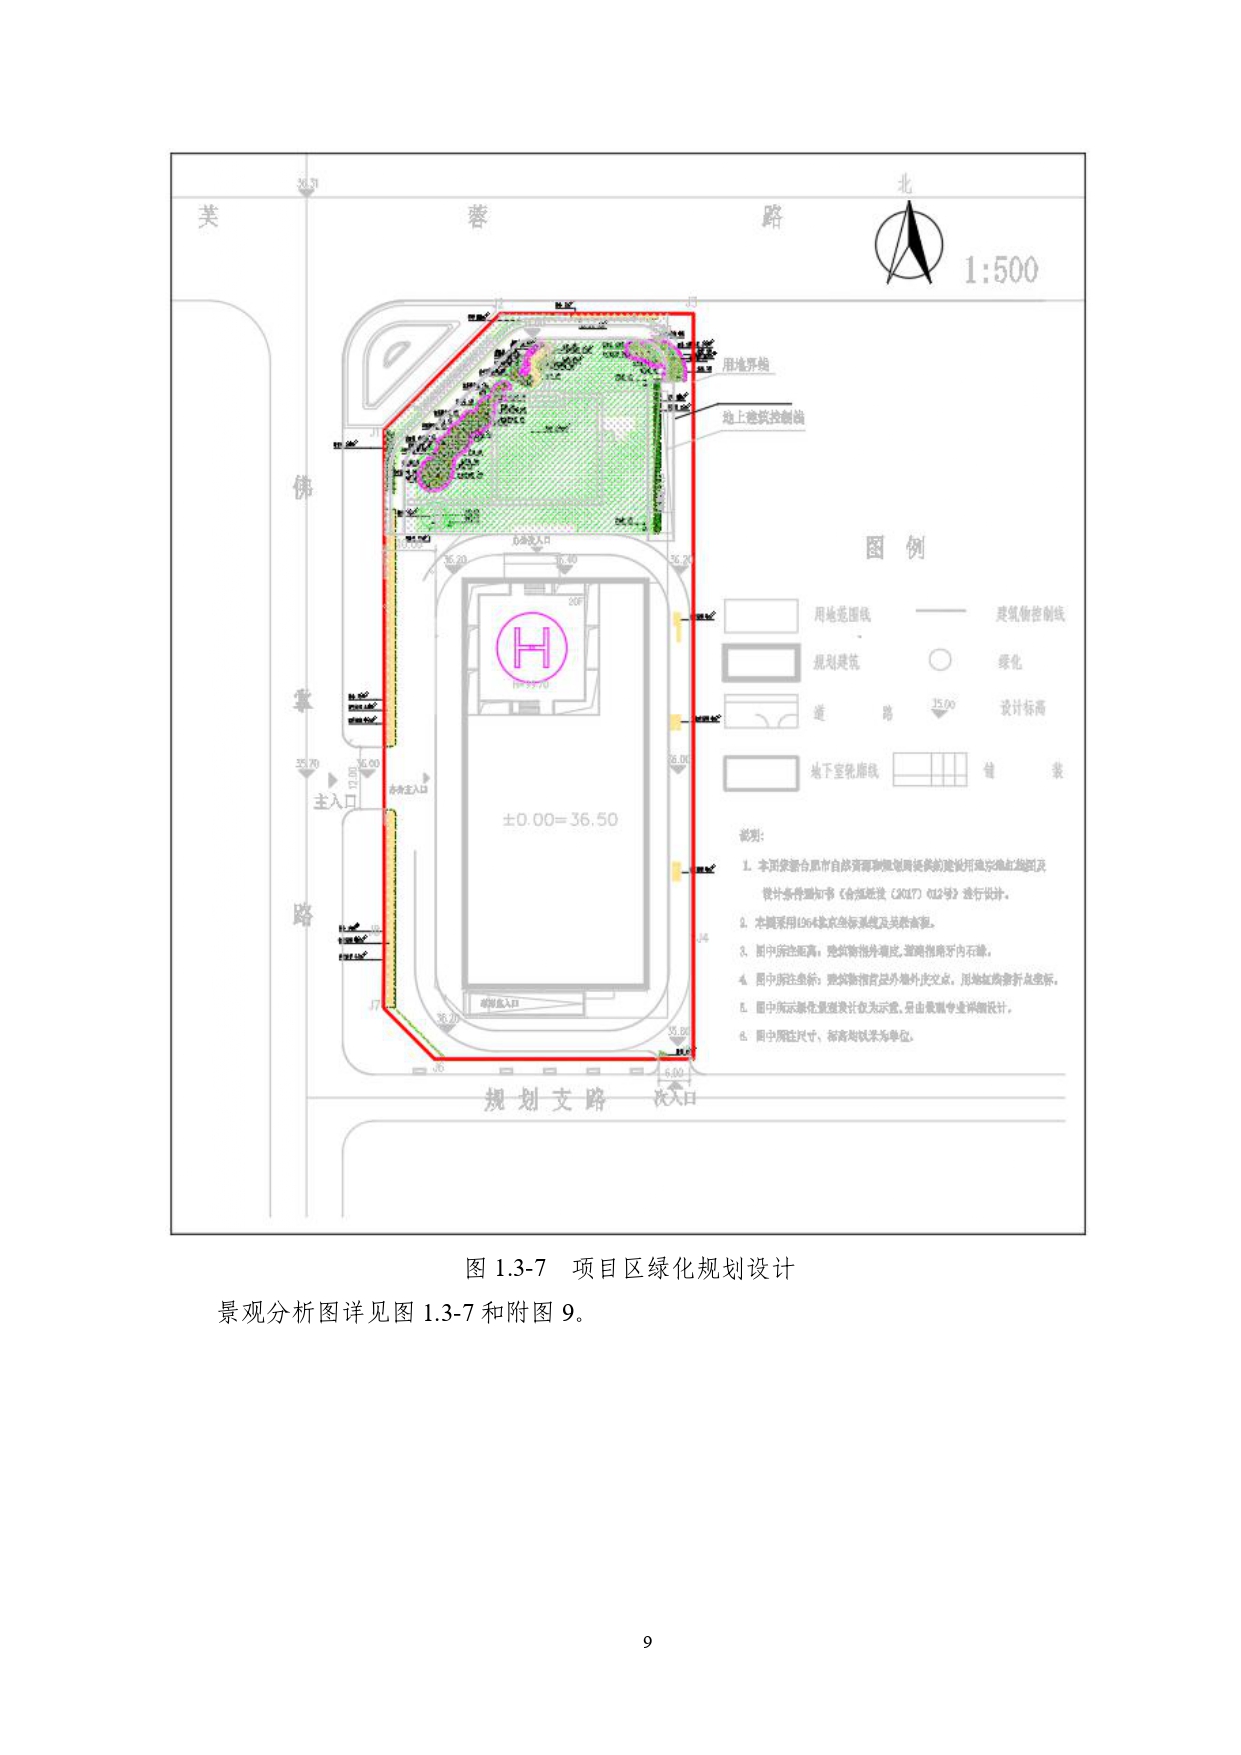 01-中果广场大厦项目水土保持报告表-打印_page-0020.jpg